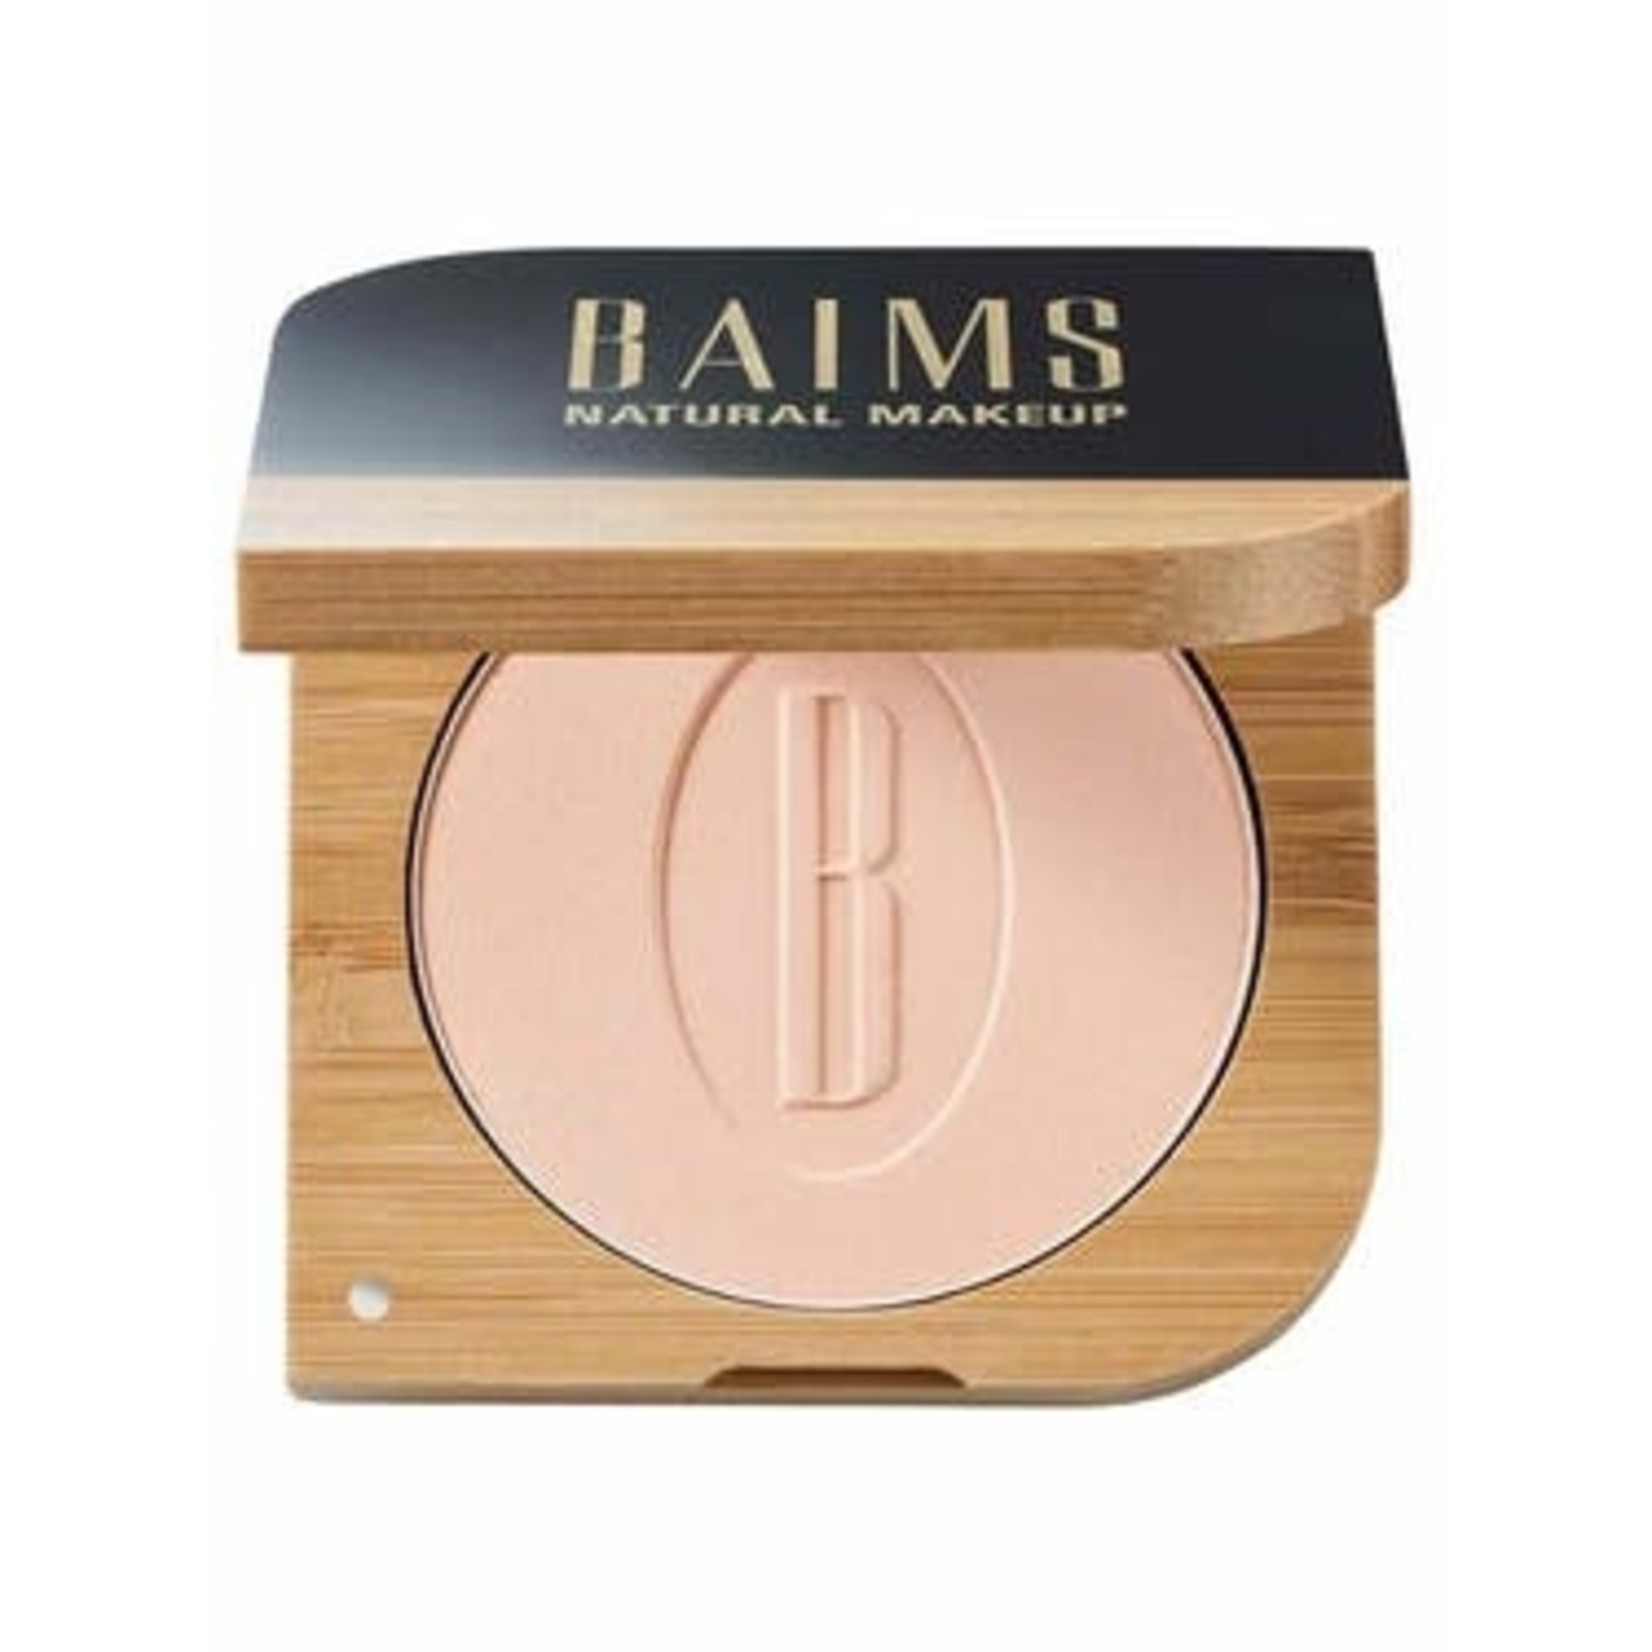 Baims Natural make-up Mineraal poeder, geschikt voor alle huidtypes bamboe verpakking